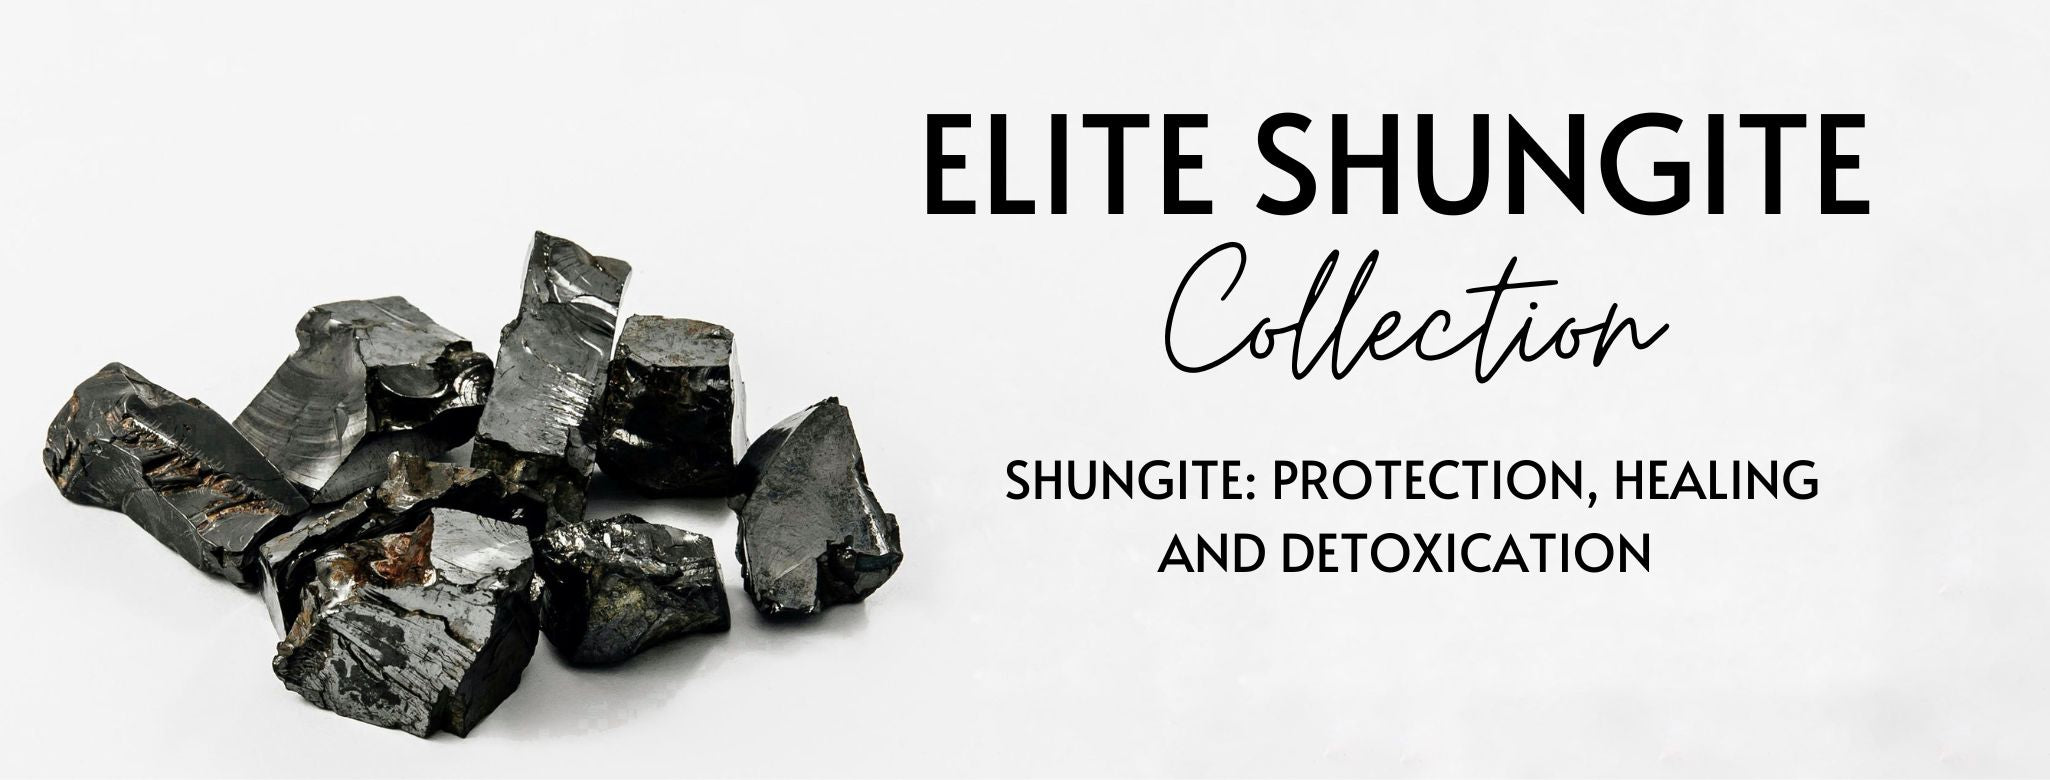 Elite Shungite Uses - MagicCrystals.com – Magic Crystals